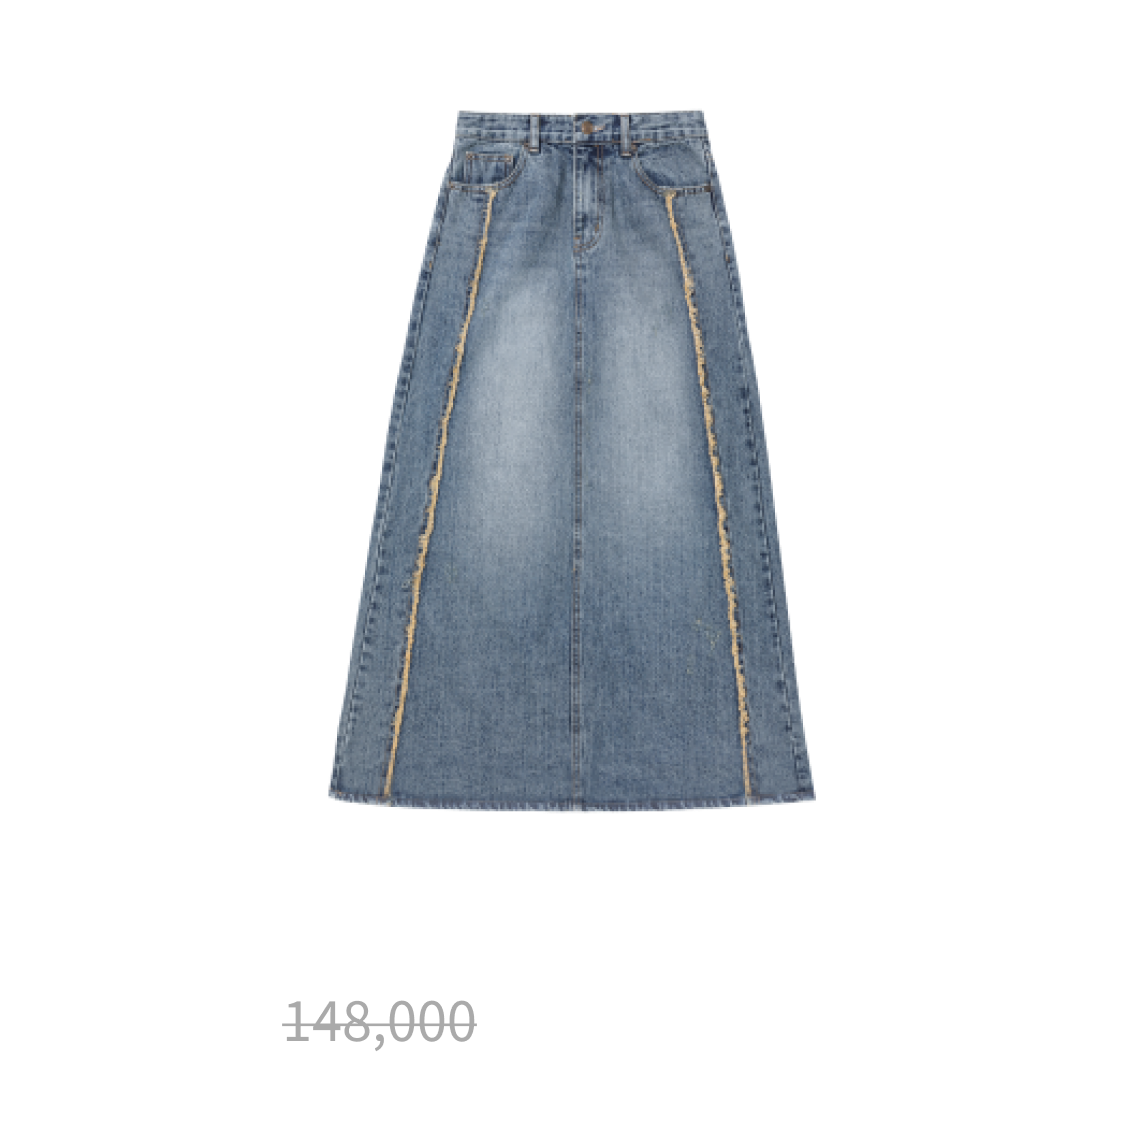 Tin denim maxi skirt - INDIGO